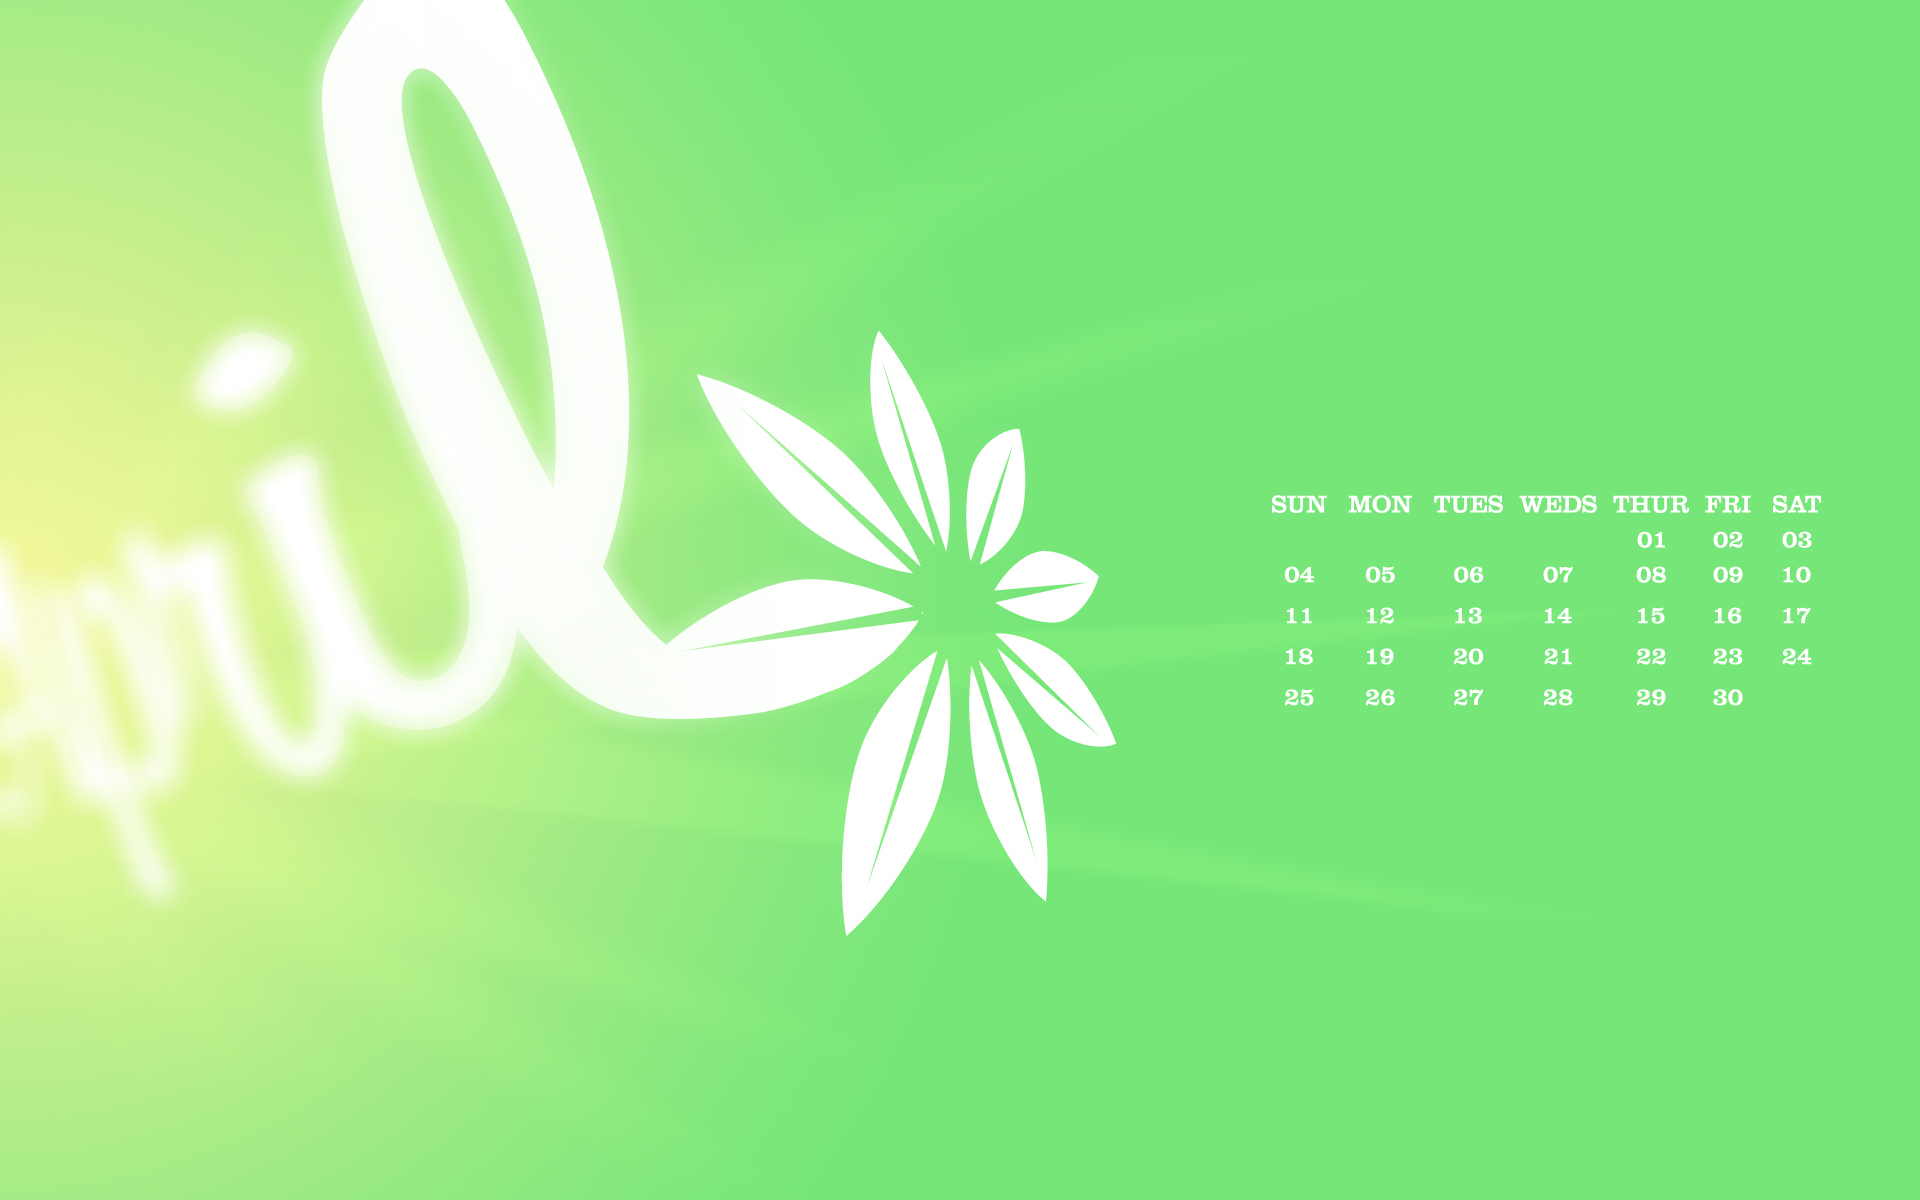 Free April 2022 Calendar Wallpapers  Desktop  Mobile